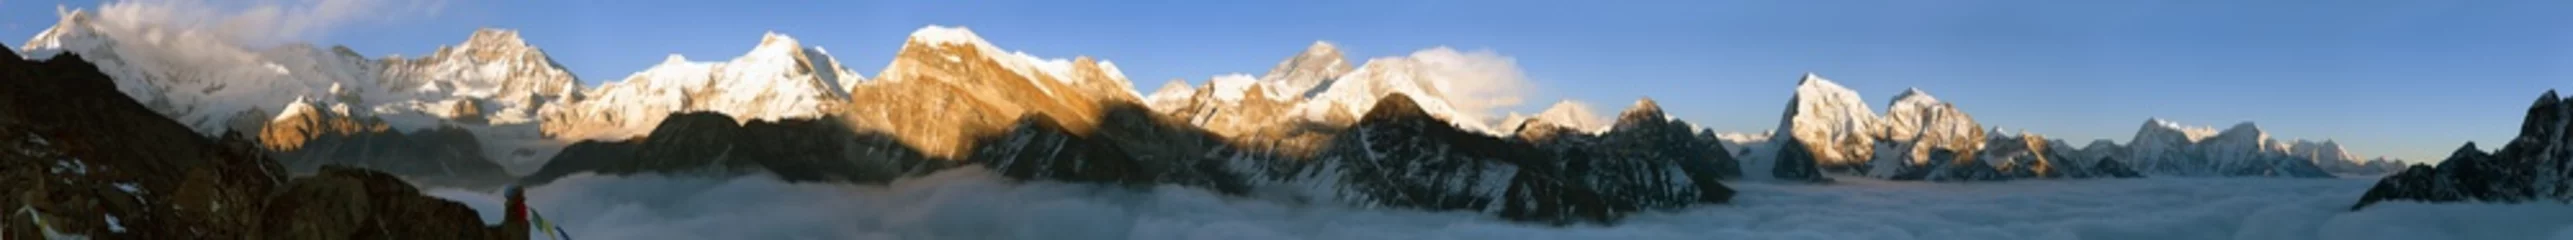 Papier Peint photo autocollant Cho Oyu vue sur le mont Everest, le Lhotse, le Makalu et le Cho Oyu